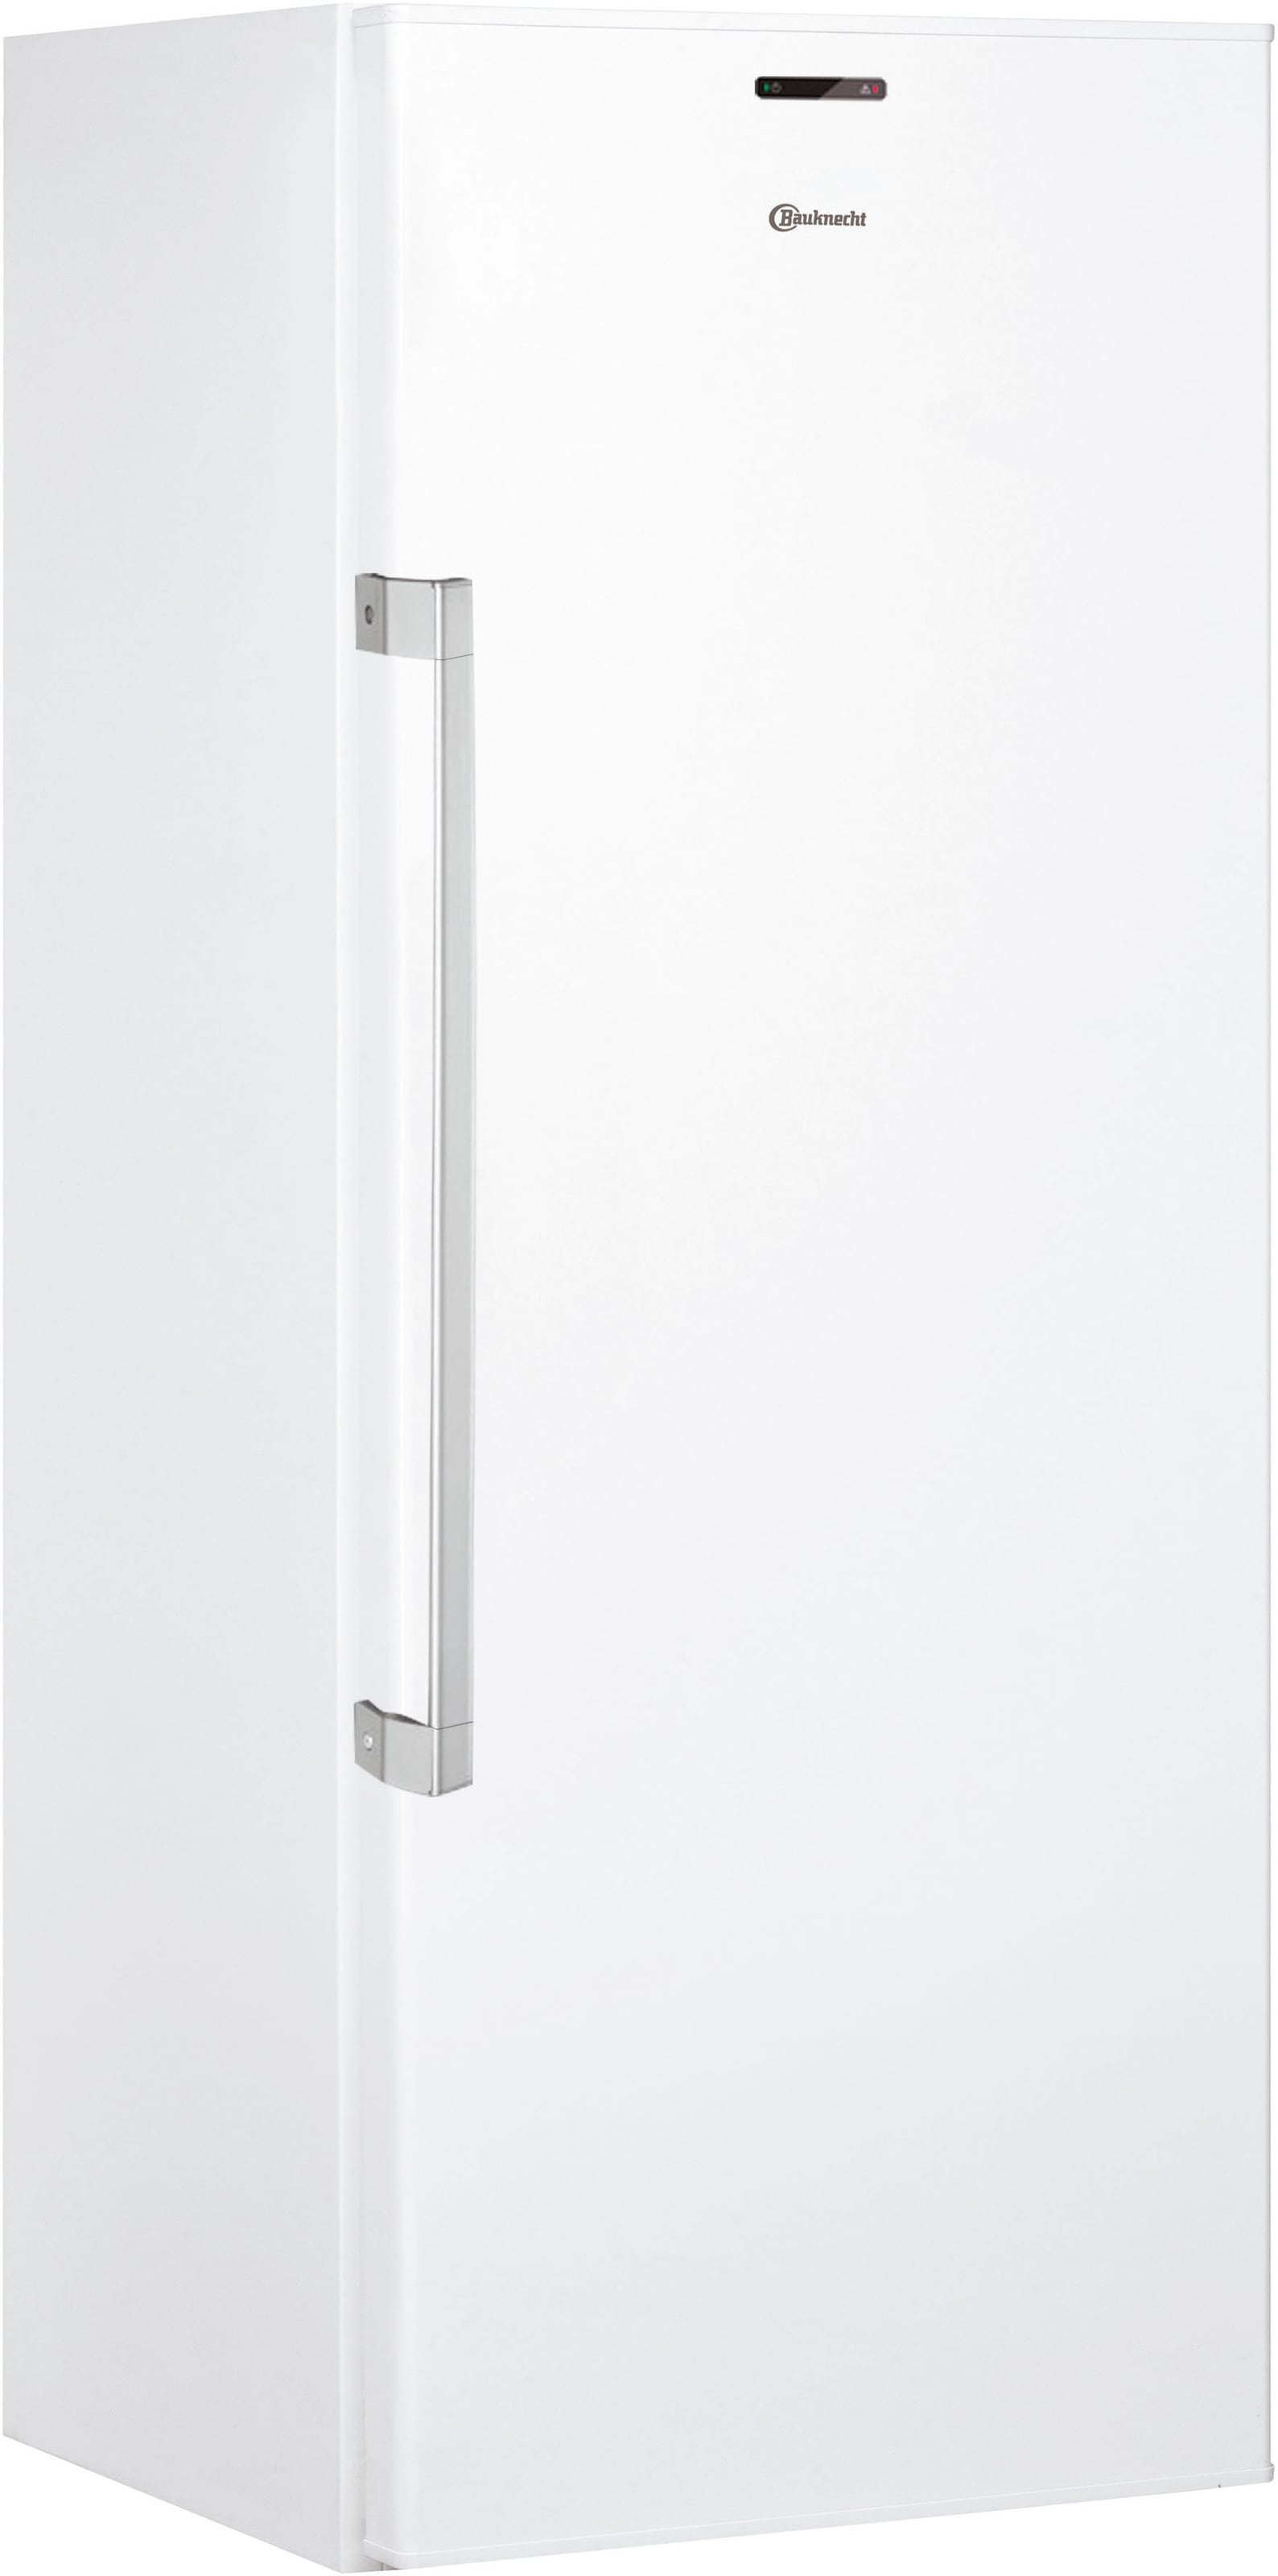 BAUKNECHT Kühlschrank "KR 17G4 WS 2", KR 17G4 WS 2, 167 cm hoch, 59,5 cm breit